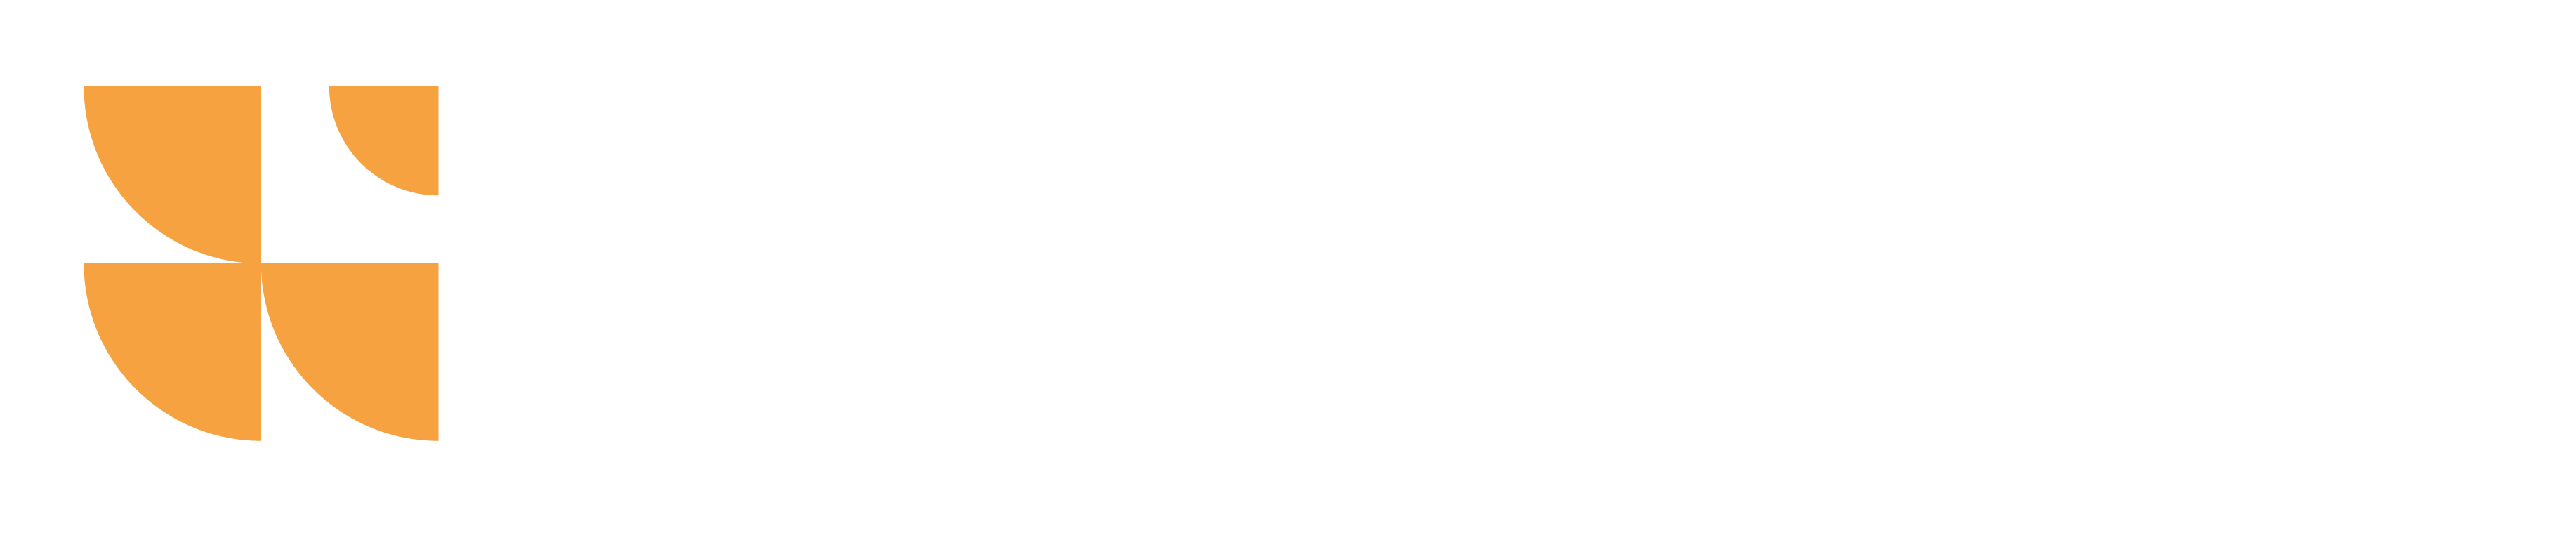 Logo of Global Skills Opportunity Program